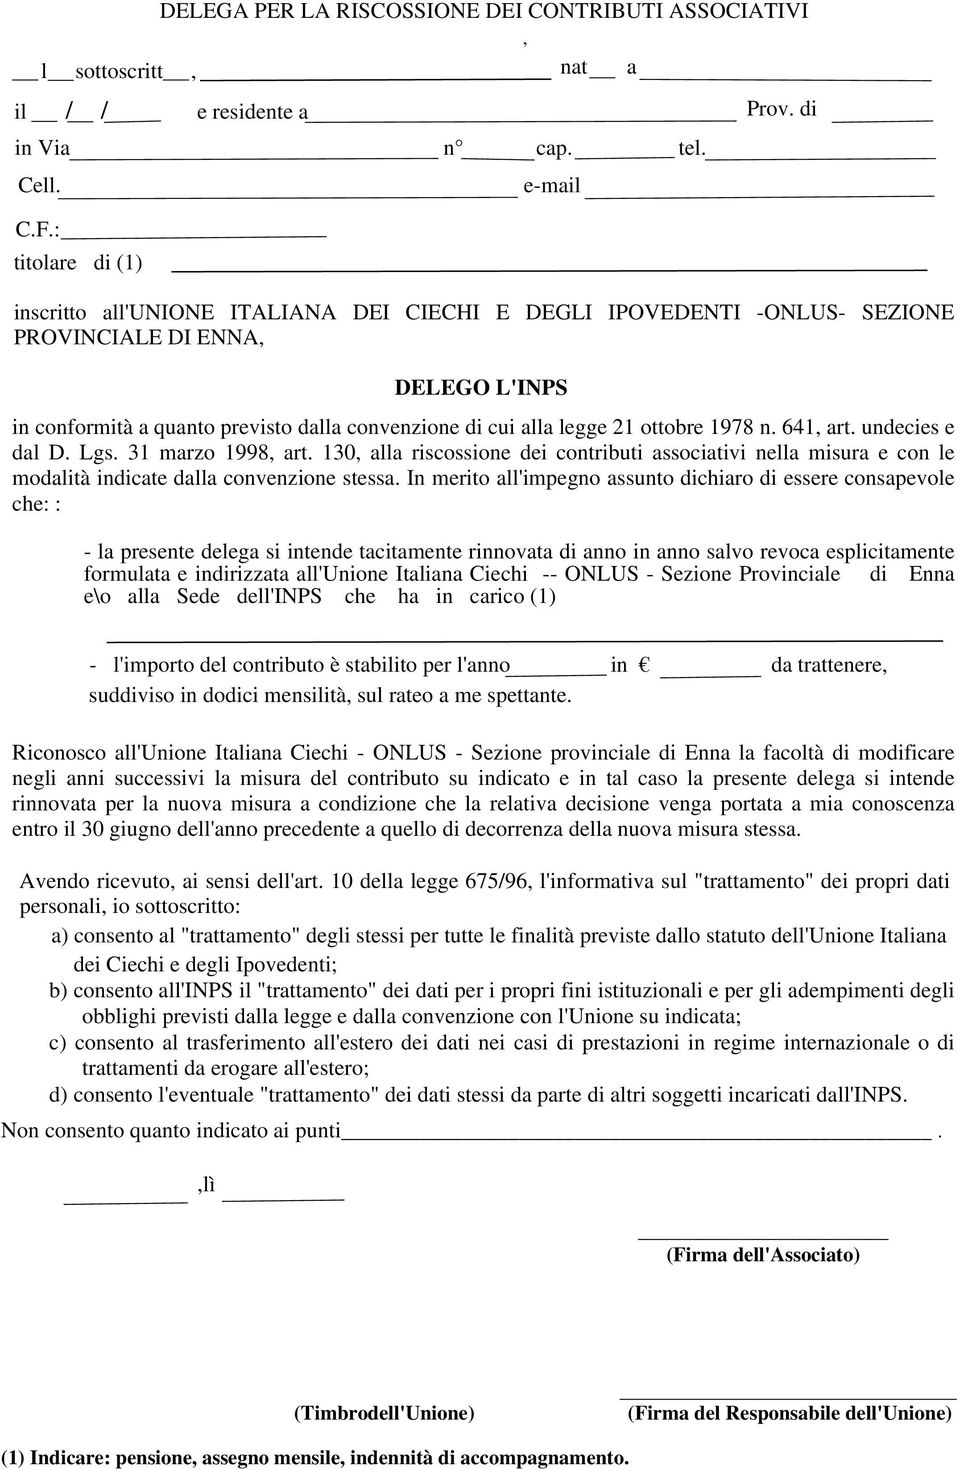 undecies e dal D. Lgs. 31 marzo 1998, art. 130, alla riscossione dei contributi associativi nella misura e con le modalità indicate dalla convenzione stessa.